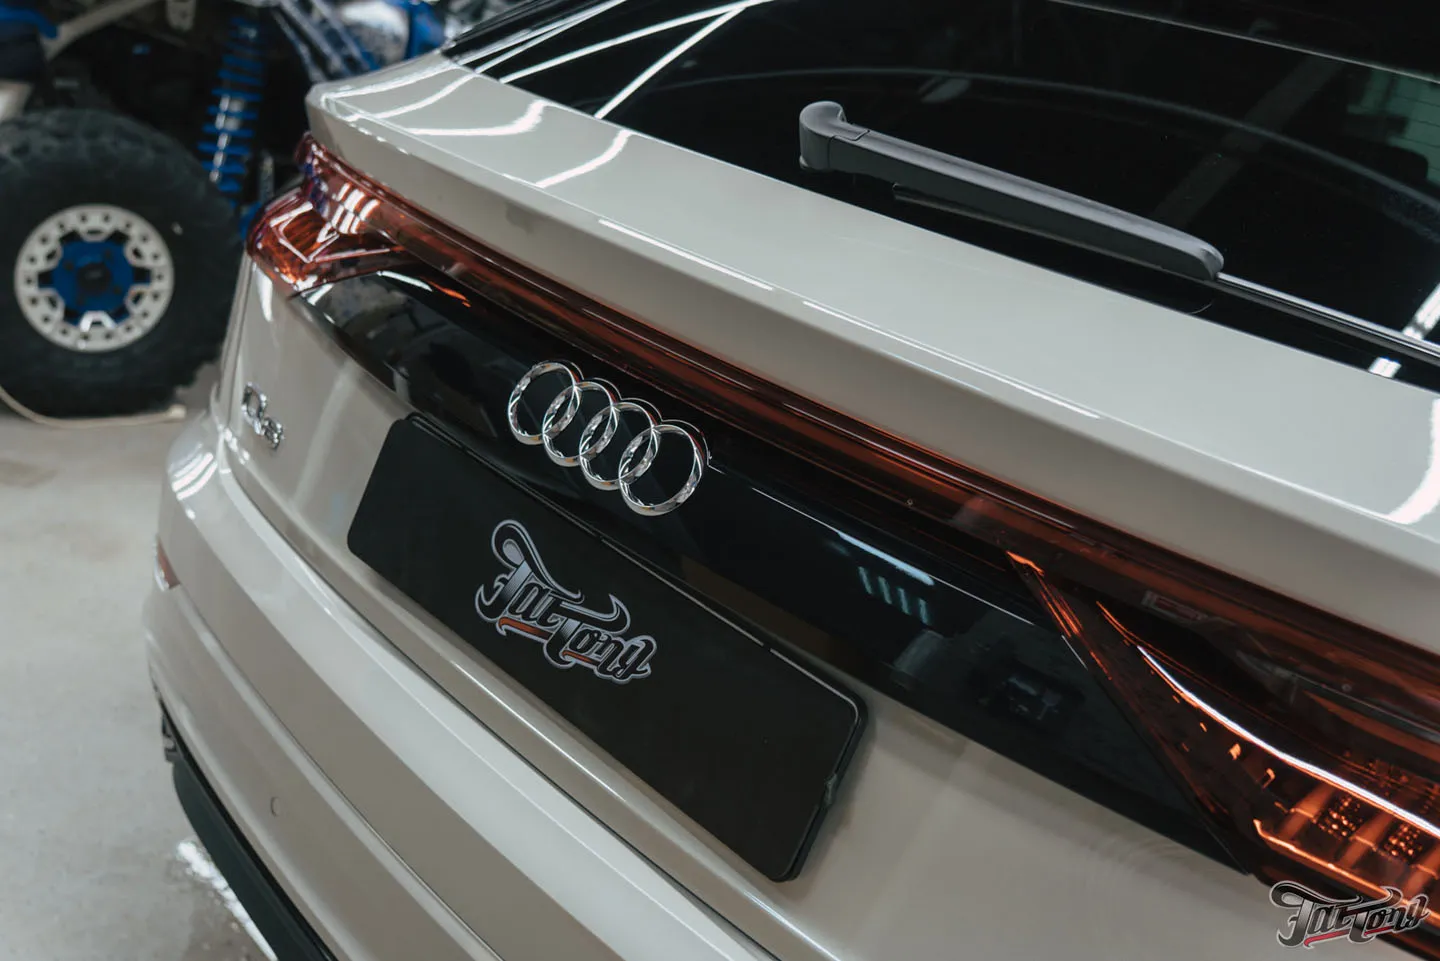 Оклейка кузова Audi Q8 глянцевым полиуретаном + защита глянца и мониторов в салоне